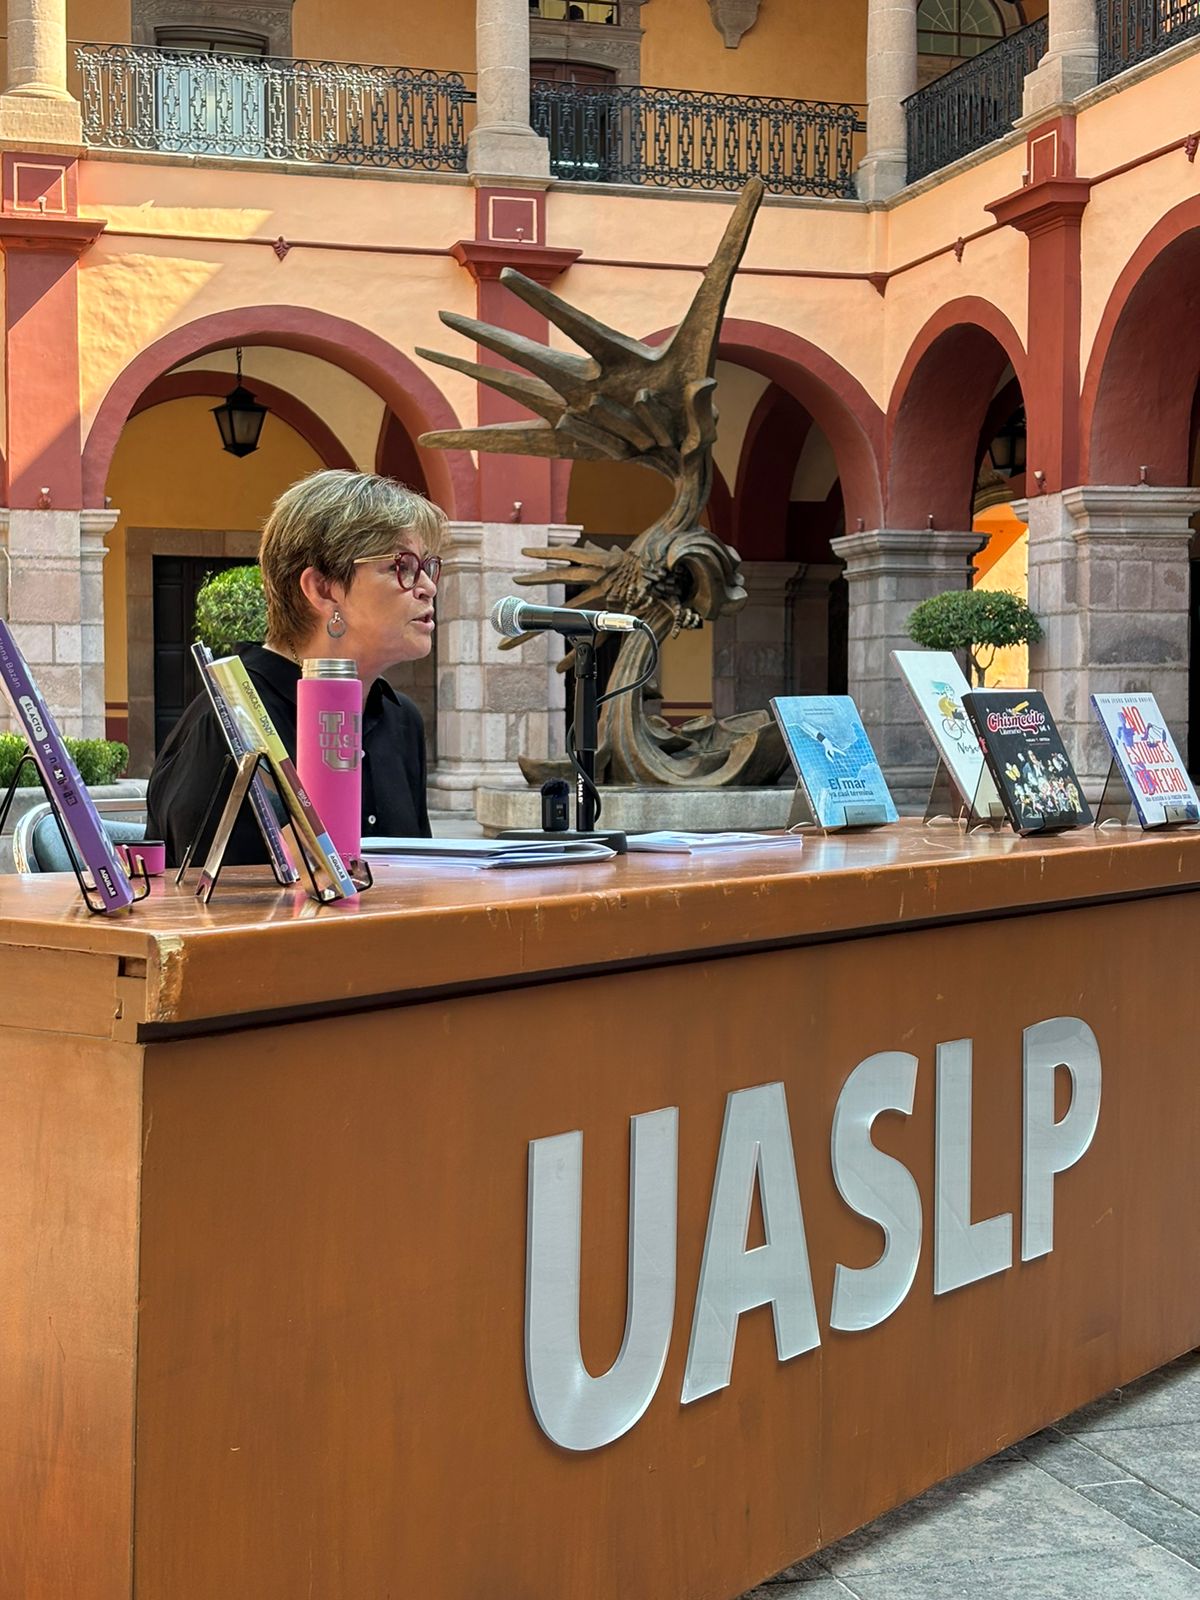 Del 24 de mayo al 1 de junio se realizará la 48 Feria Nacional del Libro UASLP con más de 90 actividades gratuitas